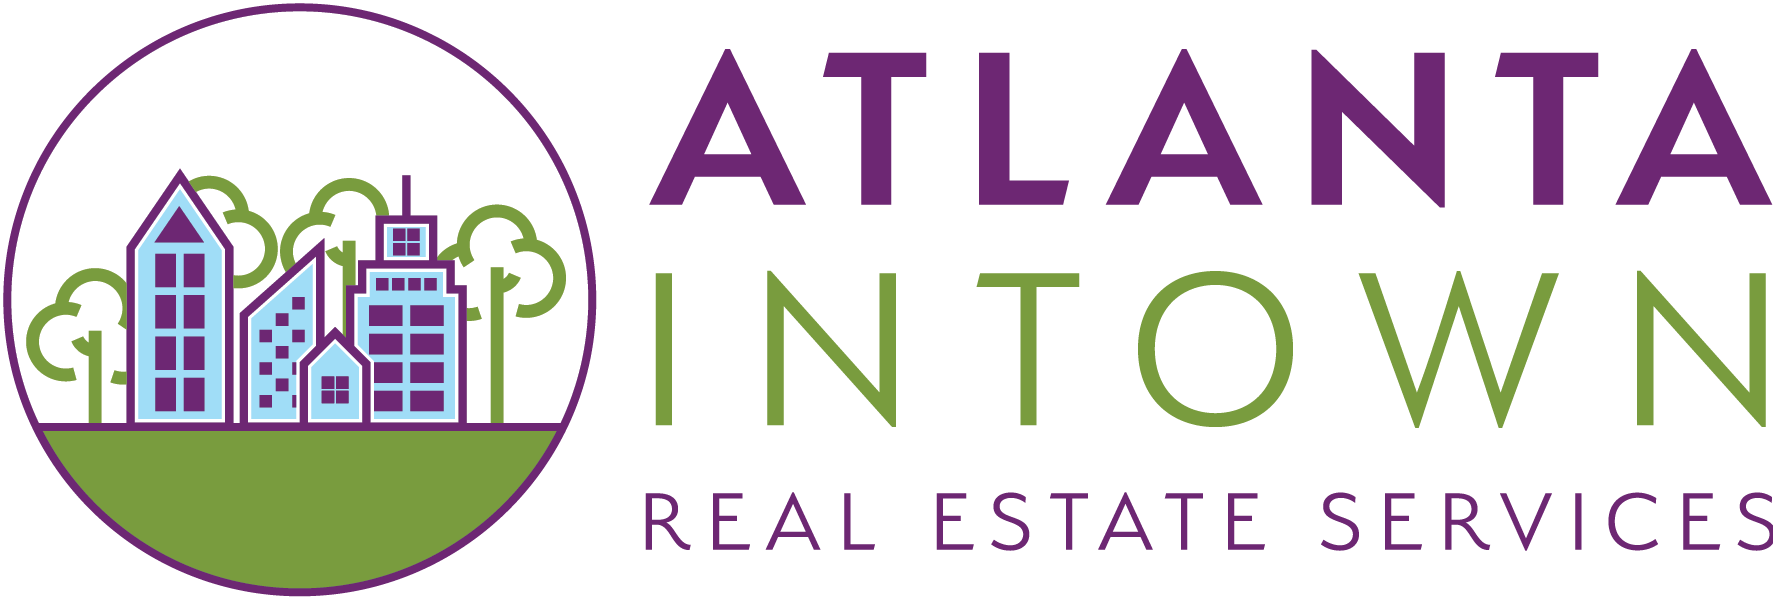 Atlanta Intown Real Estate